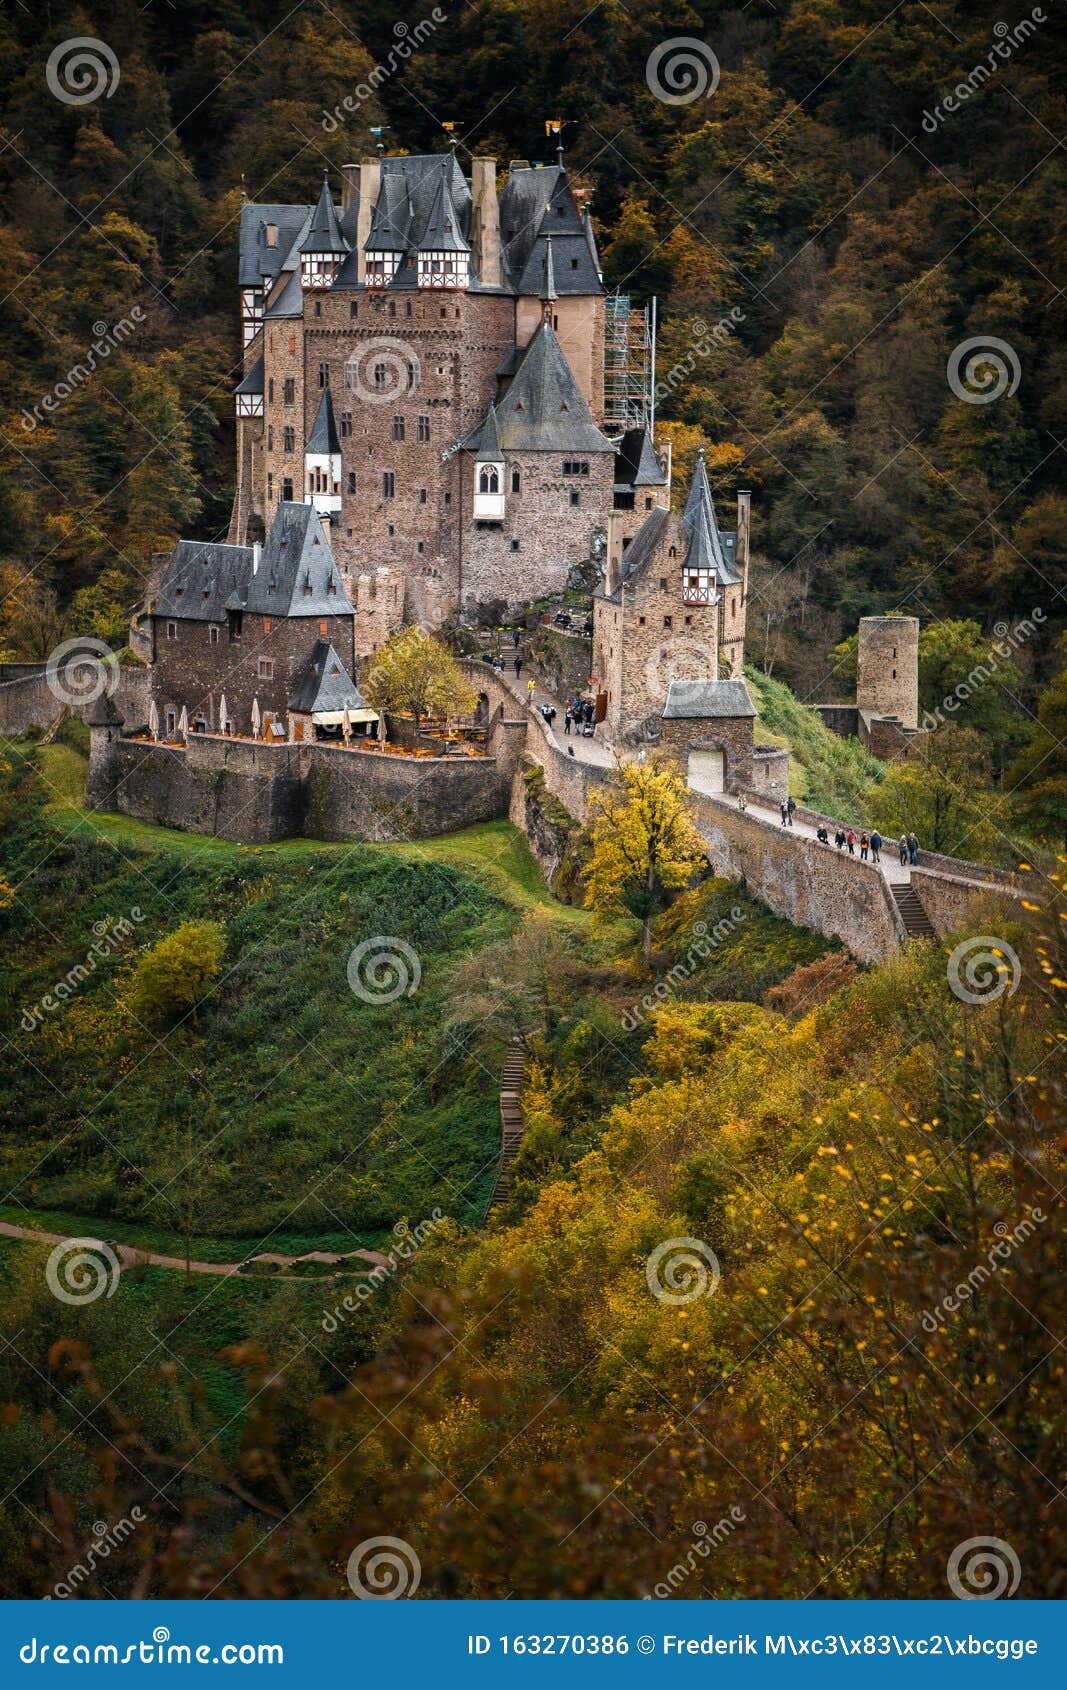 Castello Di Burg Eltz In Autunno In Germania Visualizza Da Uscita Fotografia Stock Immagine Di Struttura Valle